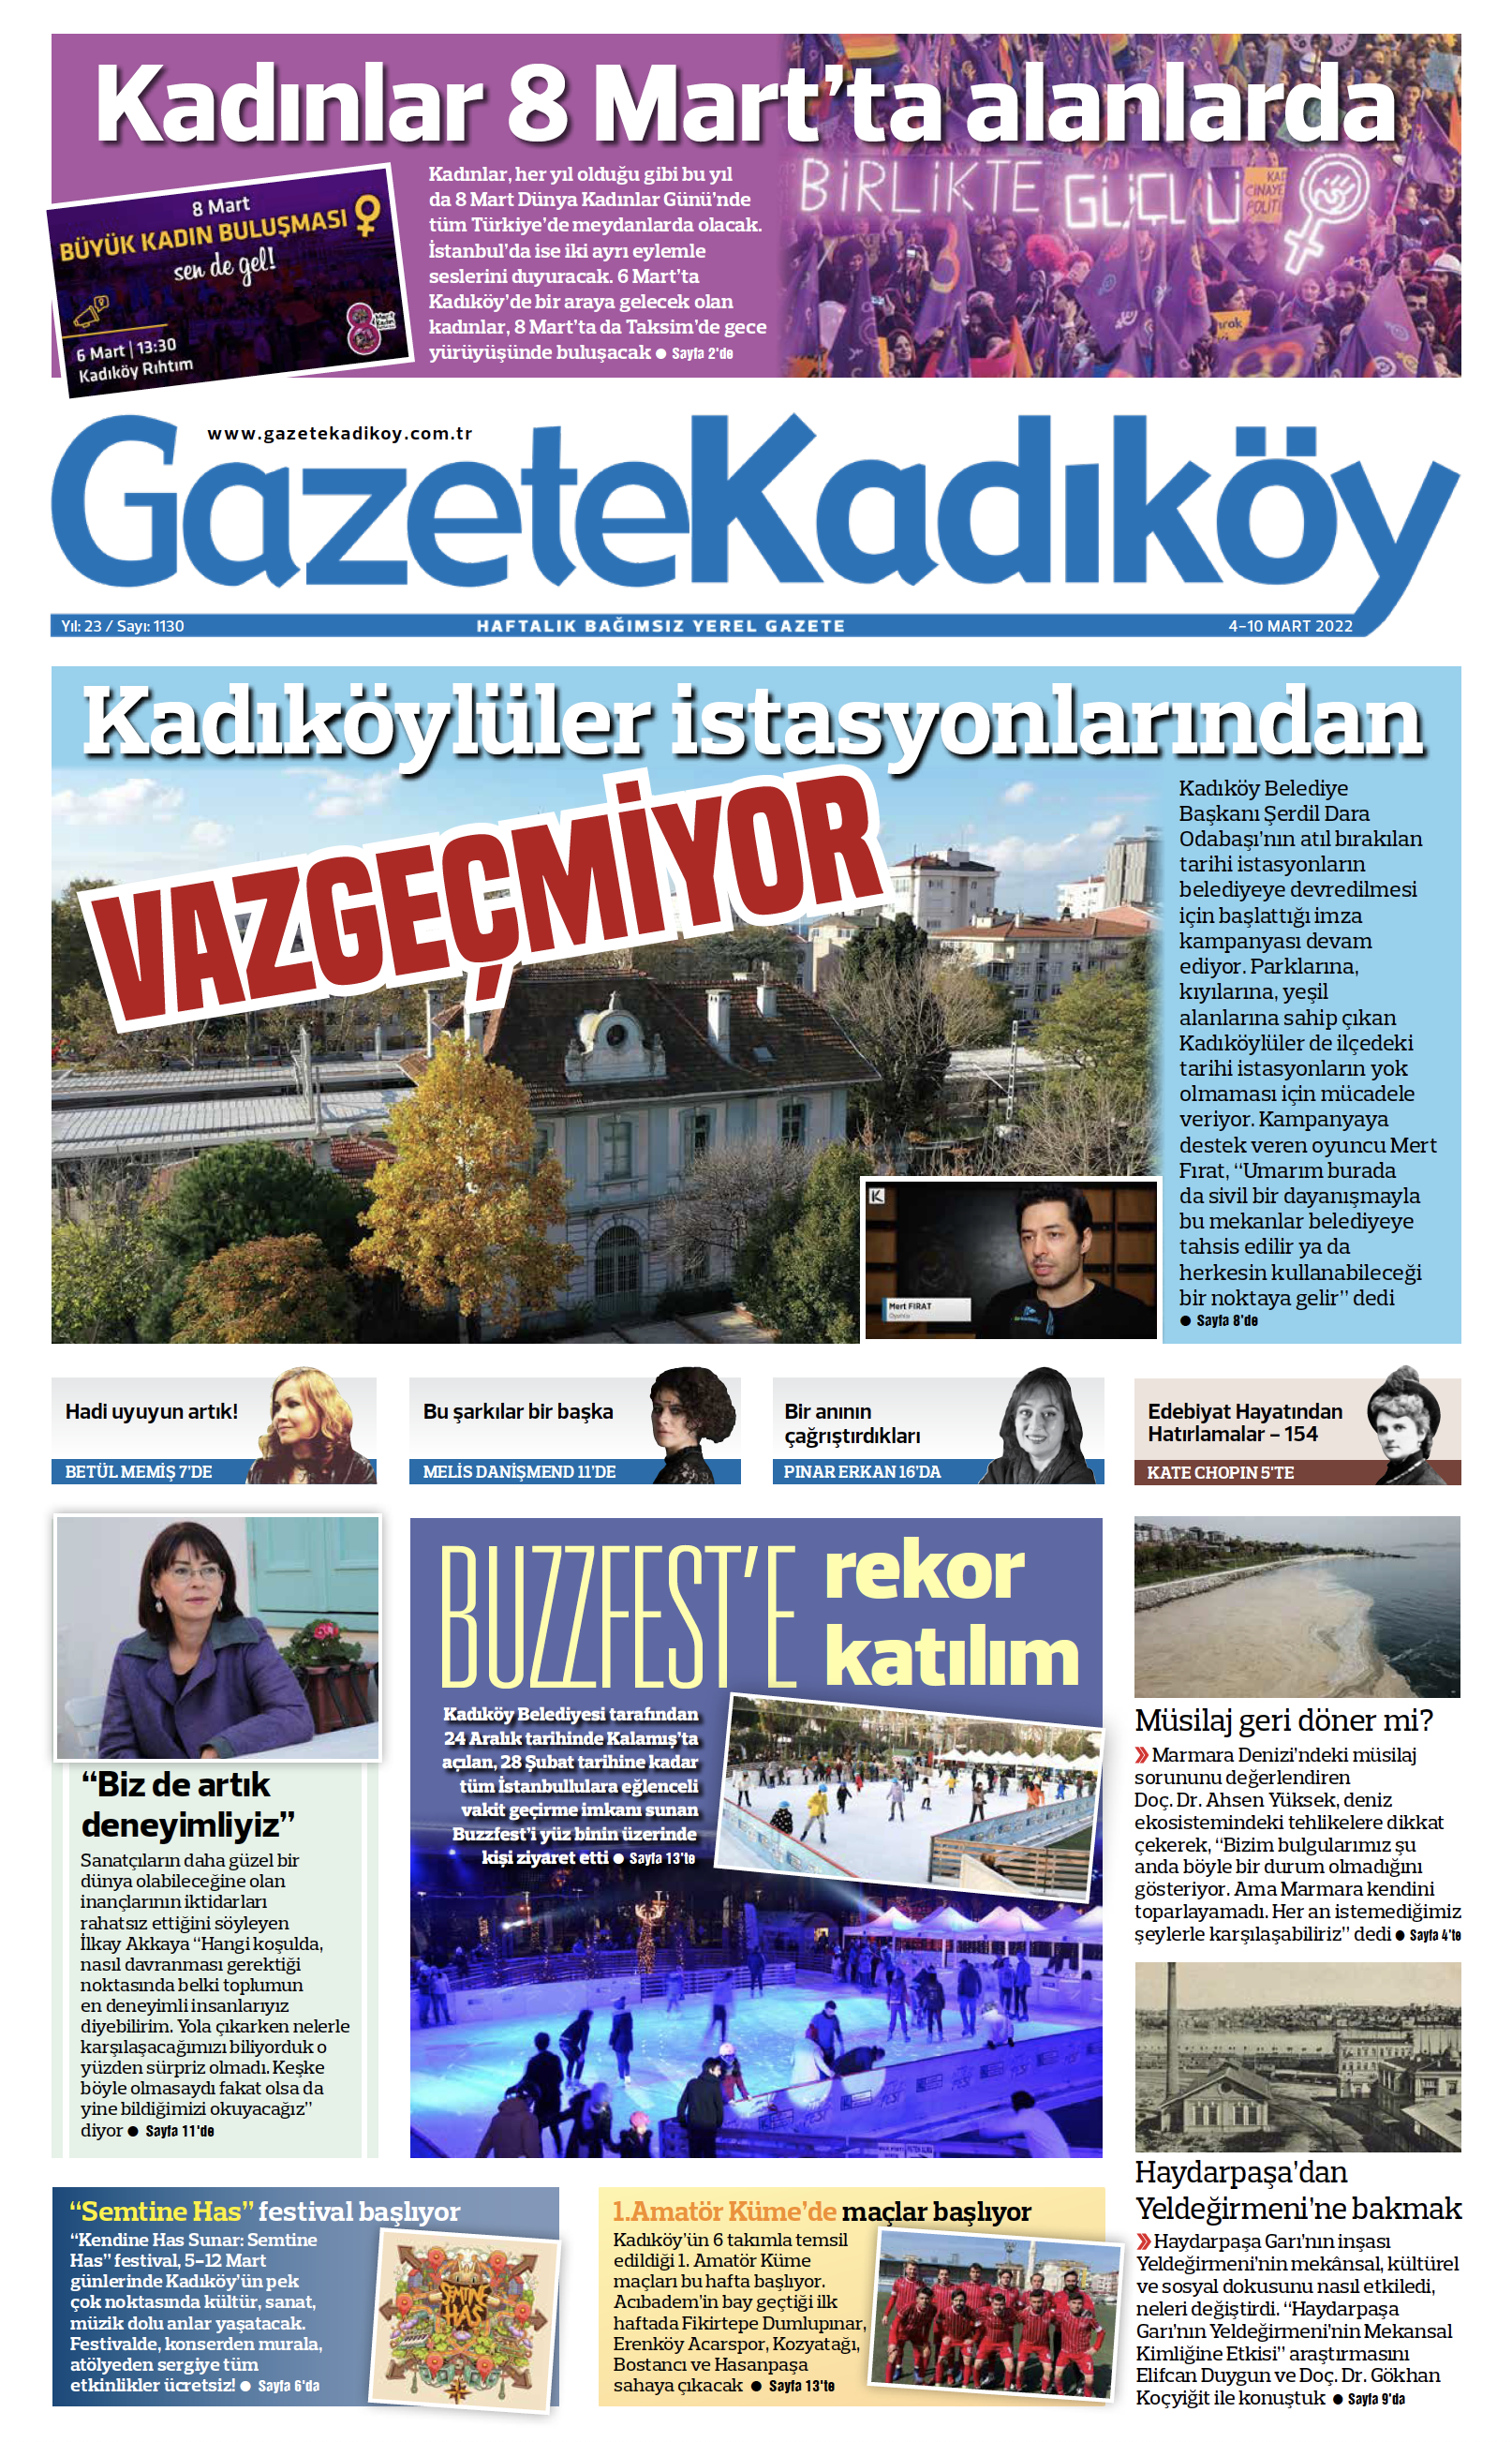 Gazete Kadıköy - 1130. Sayı